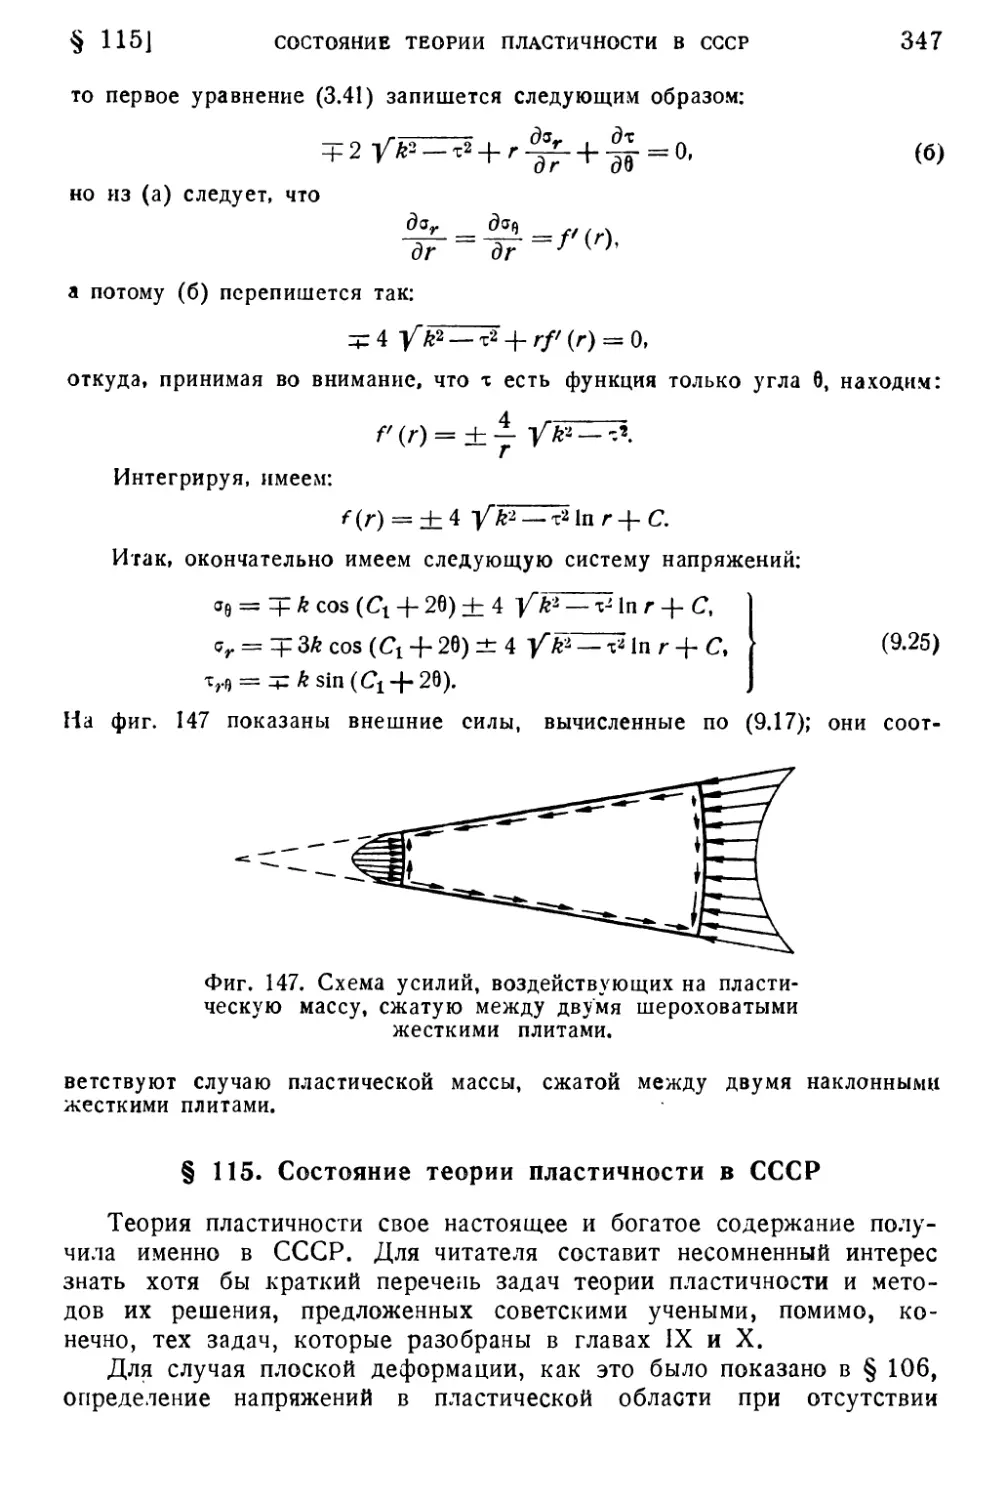 § 115. Состояние теории пластичности в СССР